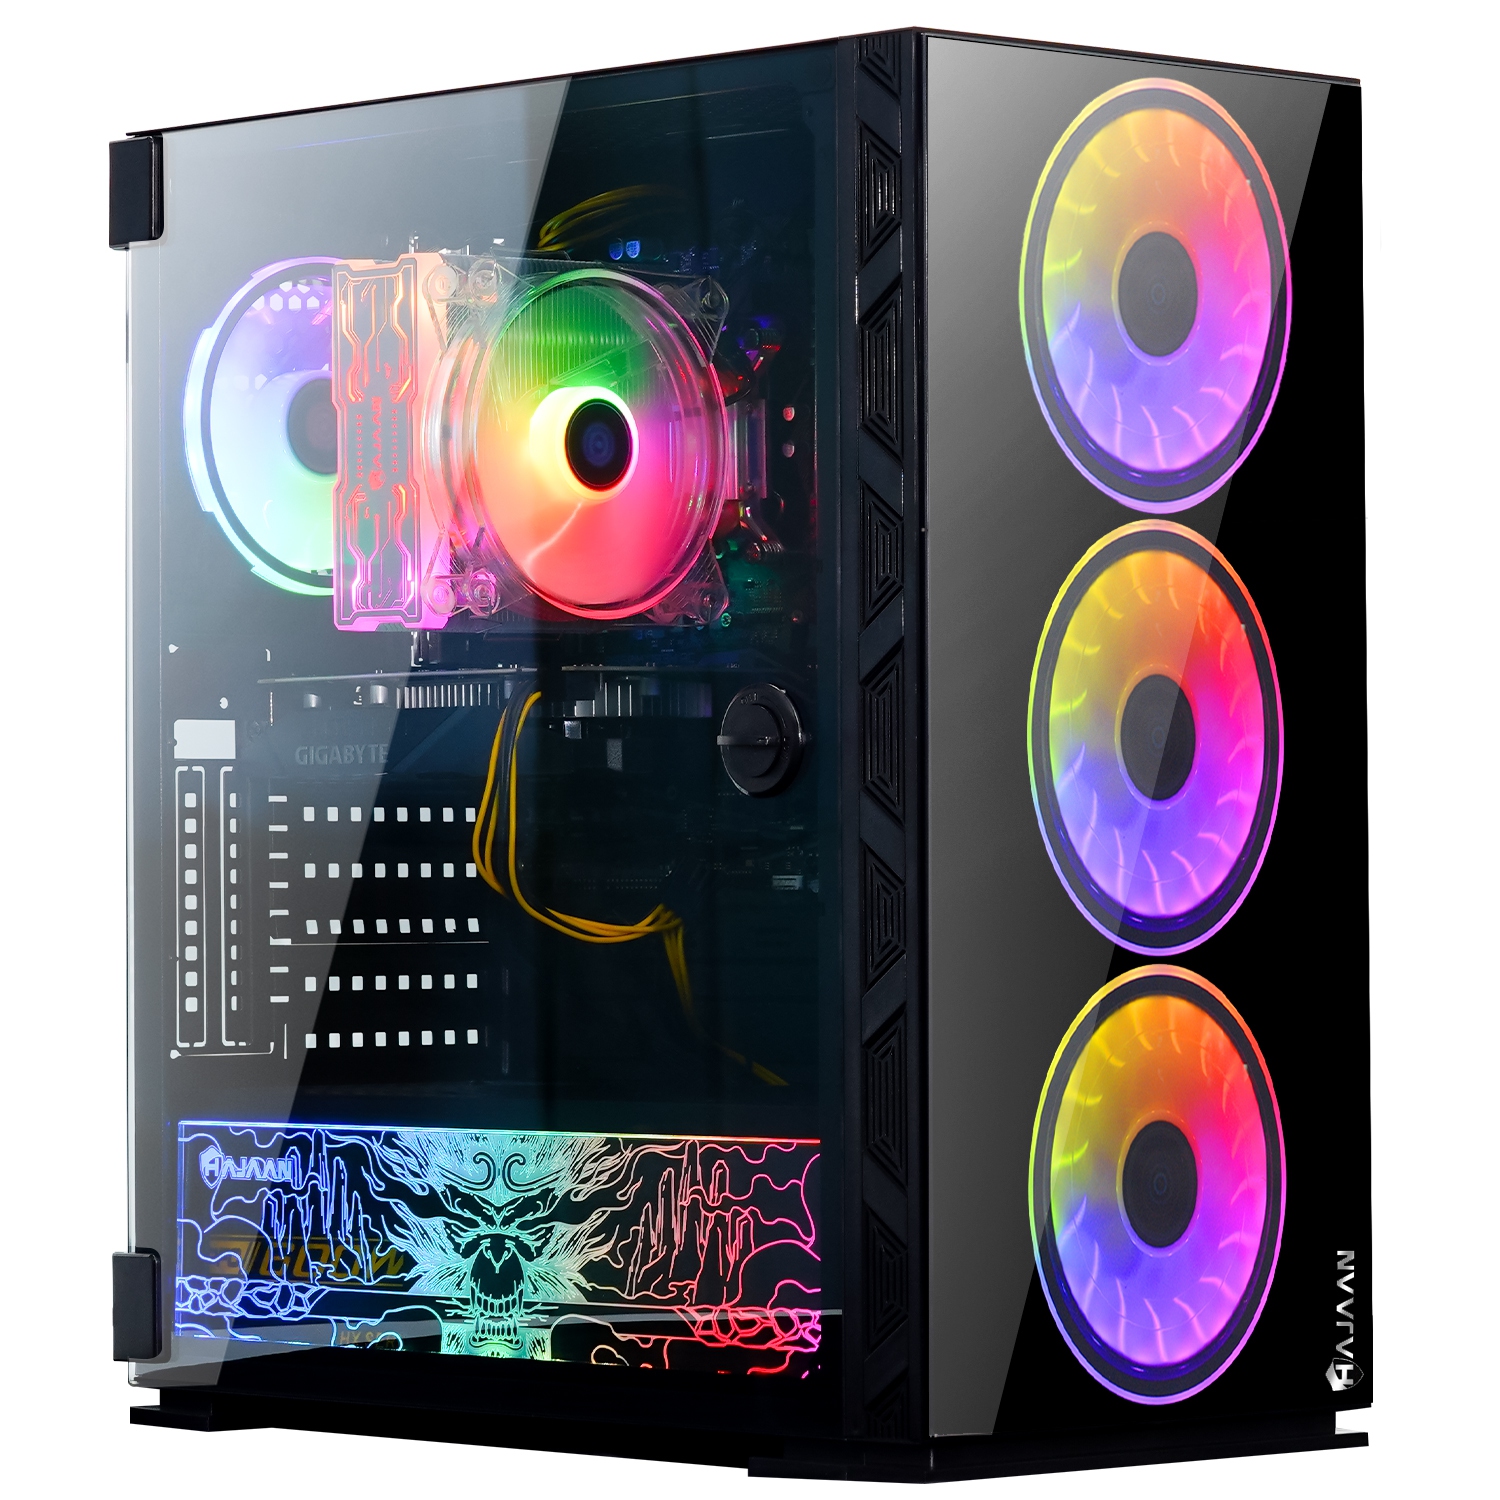 HAJAAN BREEZE PRO Gaming Desktop PC | RTX 3070 8GB GDDR6 | AMD Ryzen 7 5800X 8-Core Processor | 16GB DDR4 RAM | 512GB SSD | Windows 11 Pro | Black